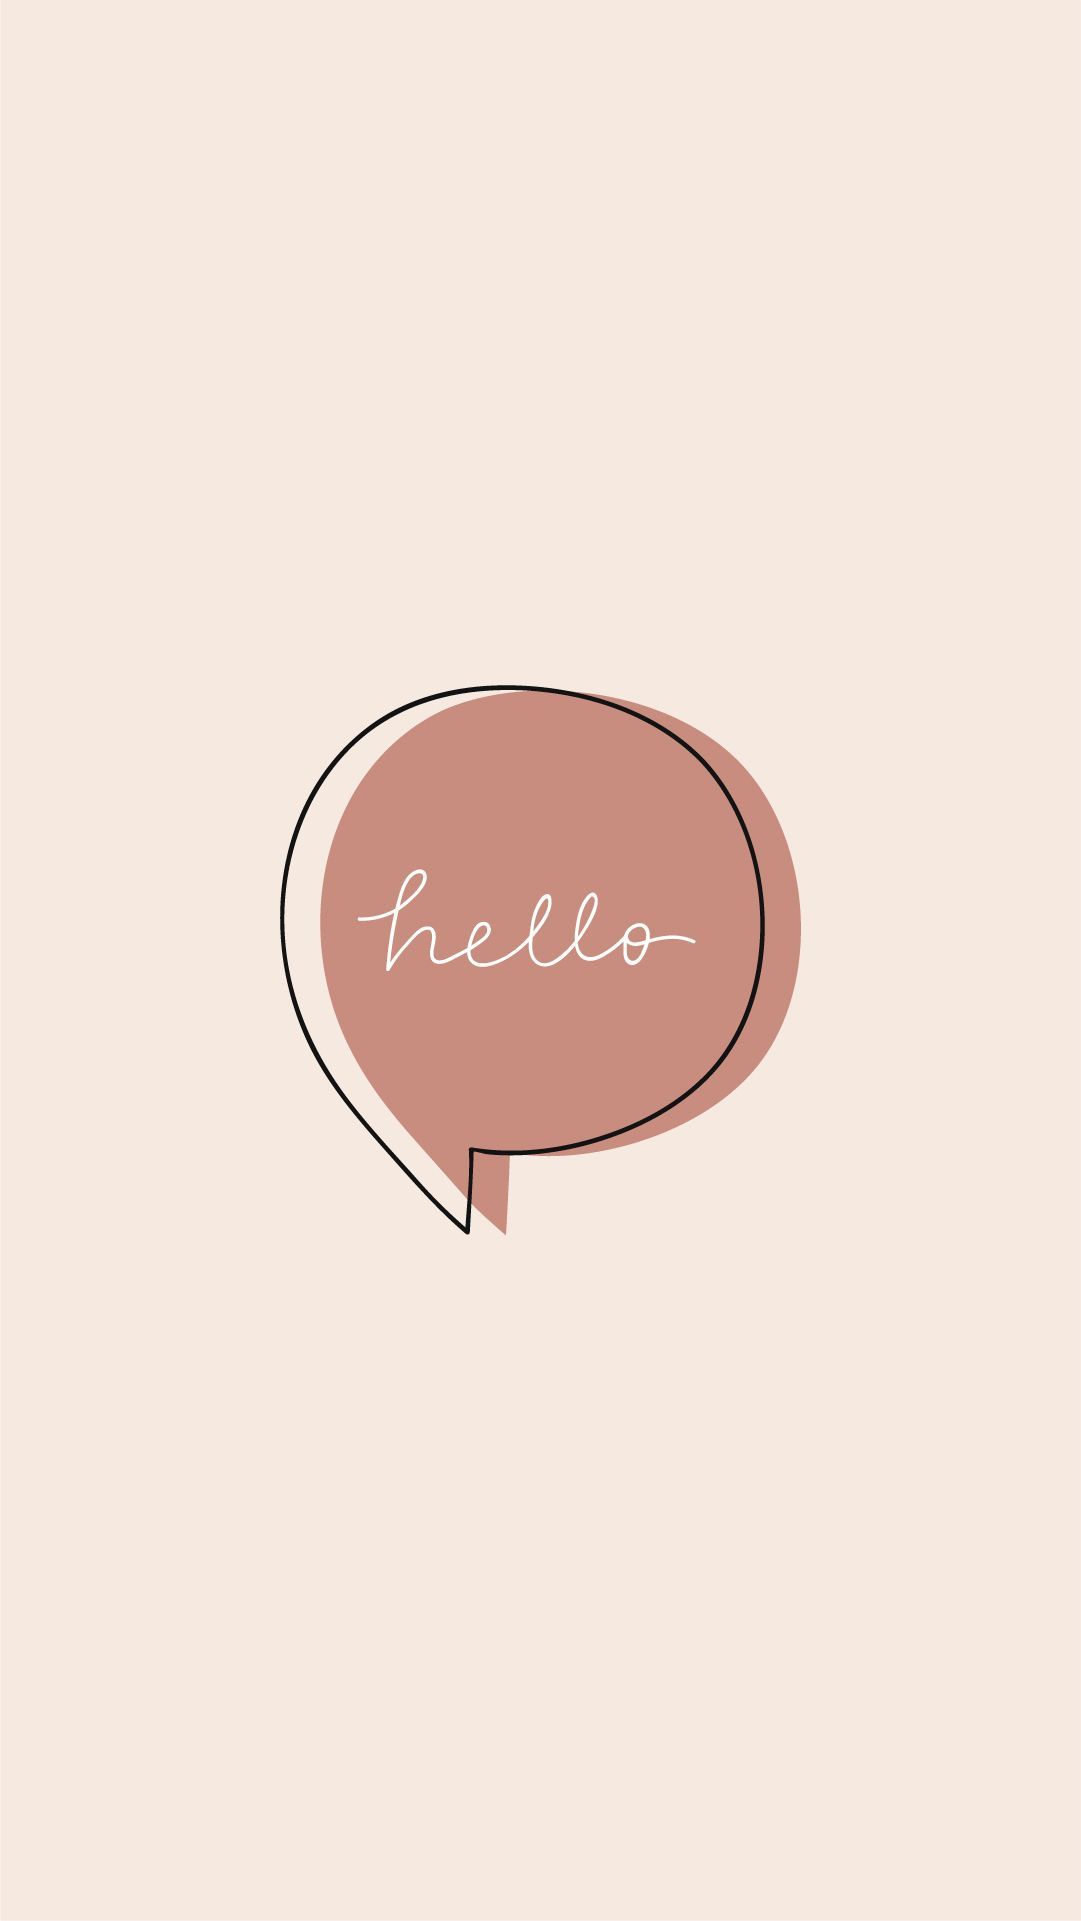 Hello Speech Bubble Vector. Fondos de colores, Disenos de unas, Iconos de instagram